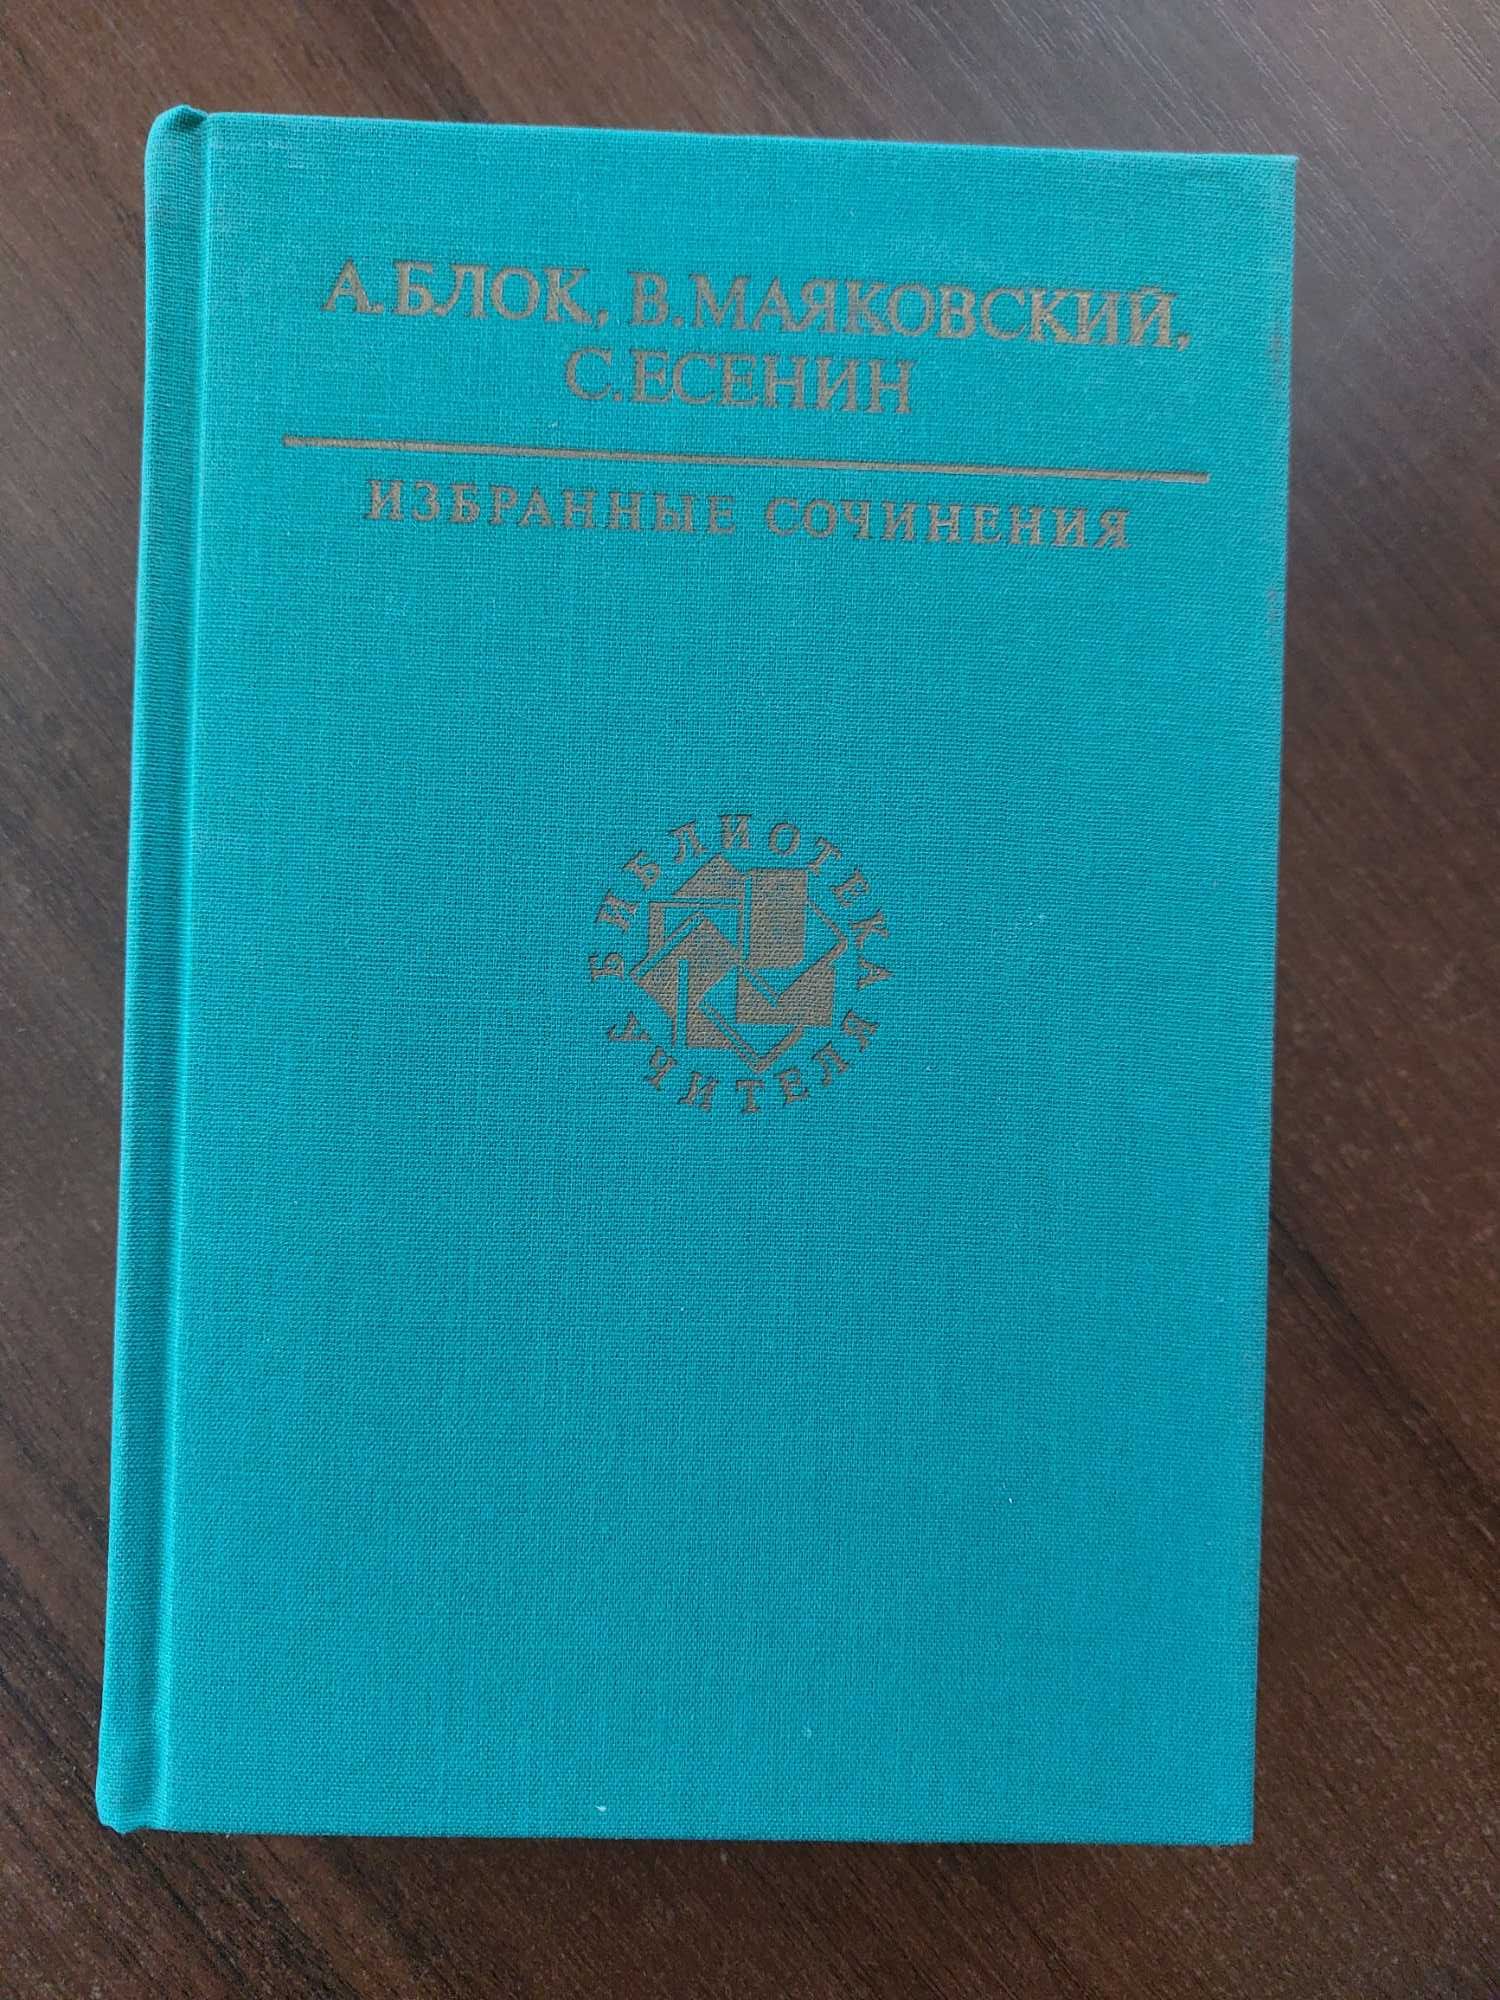 Собрание сочинений -Лермонтов, Толстой, Достоевский и др.